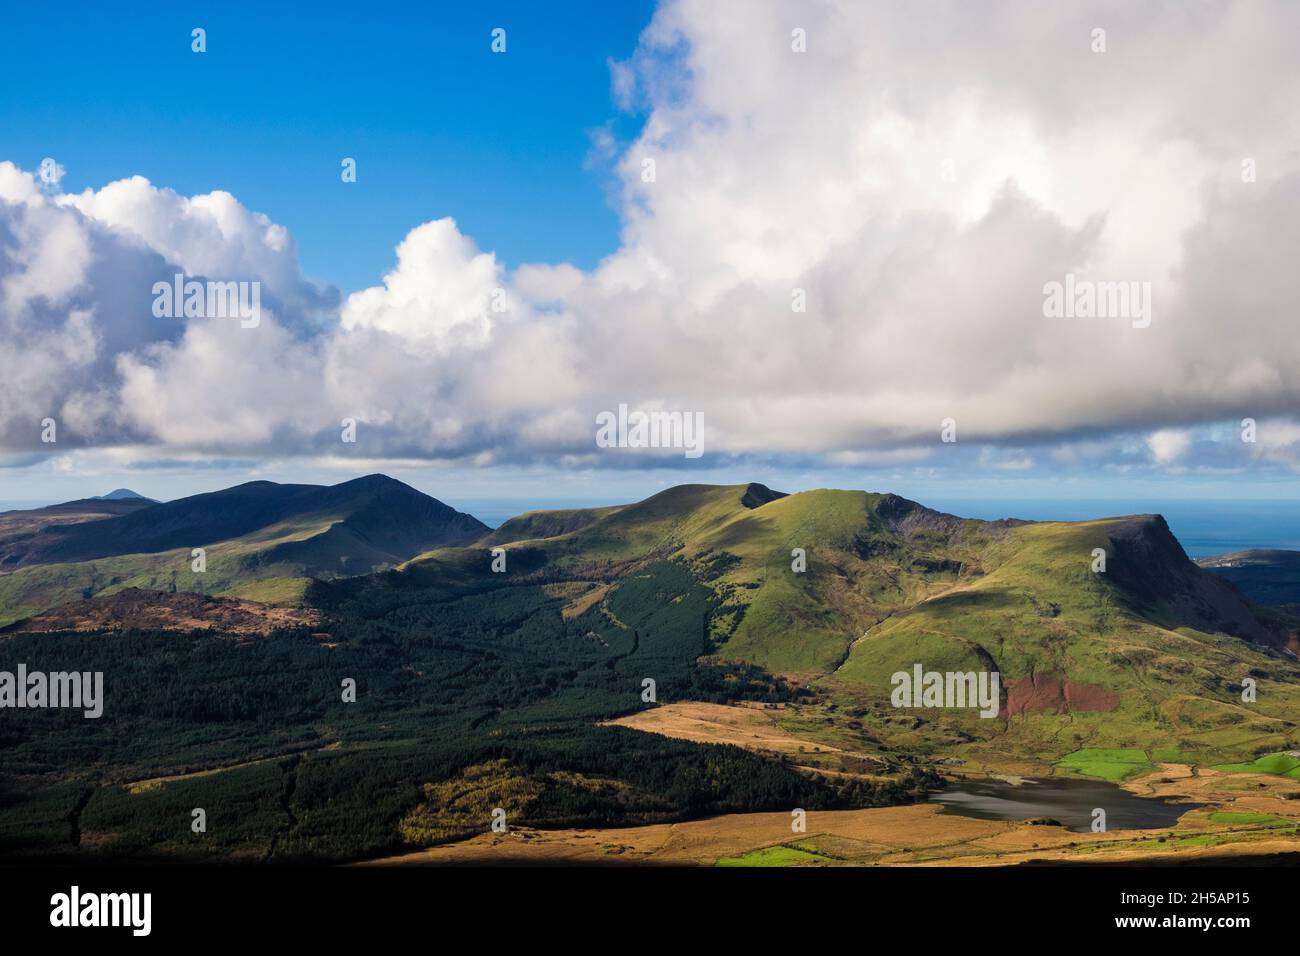 Vue sur la vallée depuis les pentes d'YR Aran jusqu'à Nantlle Ridge, au-dessus de la forêt de Beddgelert, dans le parc national de Snowdonia.Rhyd DDU, Gwynedd, nord du pays de Galles, Royaume-Uni Banque D'Images